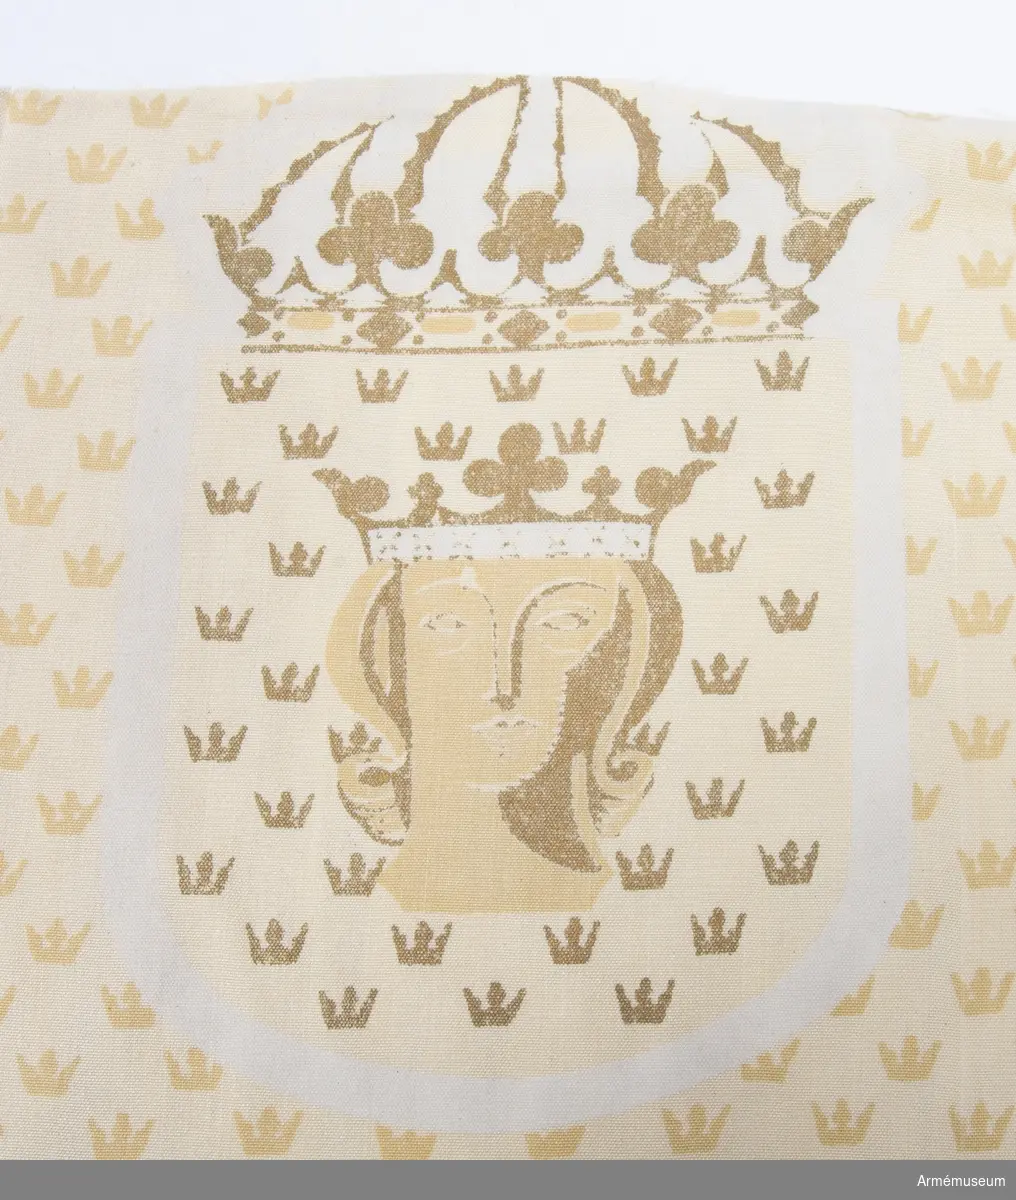 Tygprov från 1940-talet. Tillverkat för Överståthållarämbetet. Formgivet av Astrid Sampe. Textiltryck endast på en sida föreställande såsom botten prinskronor regelbundet formade över ytan i guld och gult. Utsparade motiv av Stockholms vapenbild på en sköld och krönt med en kunglig krona. Just det utsparade motivet verkar tunt i trycket.